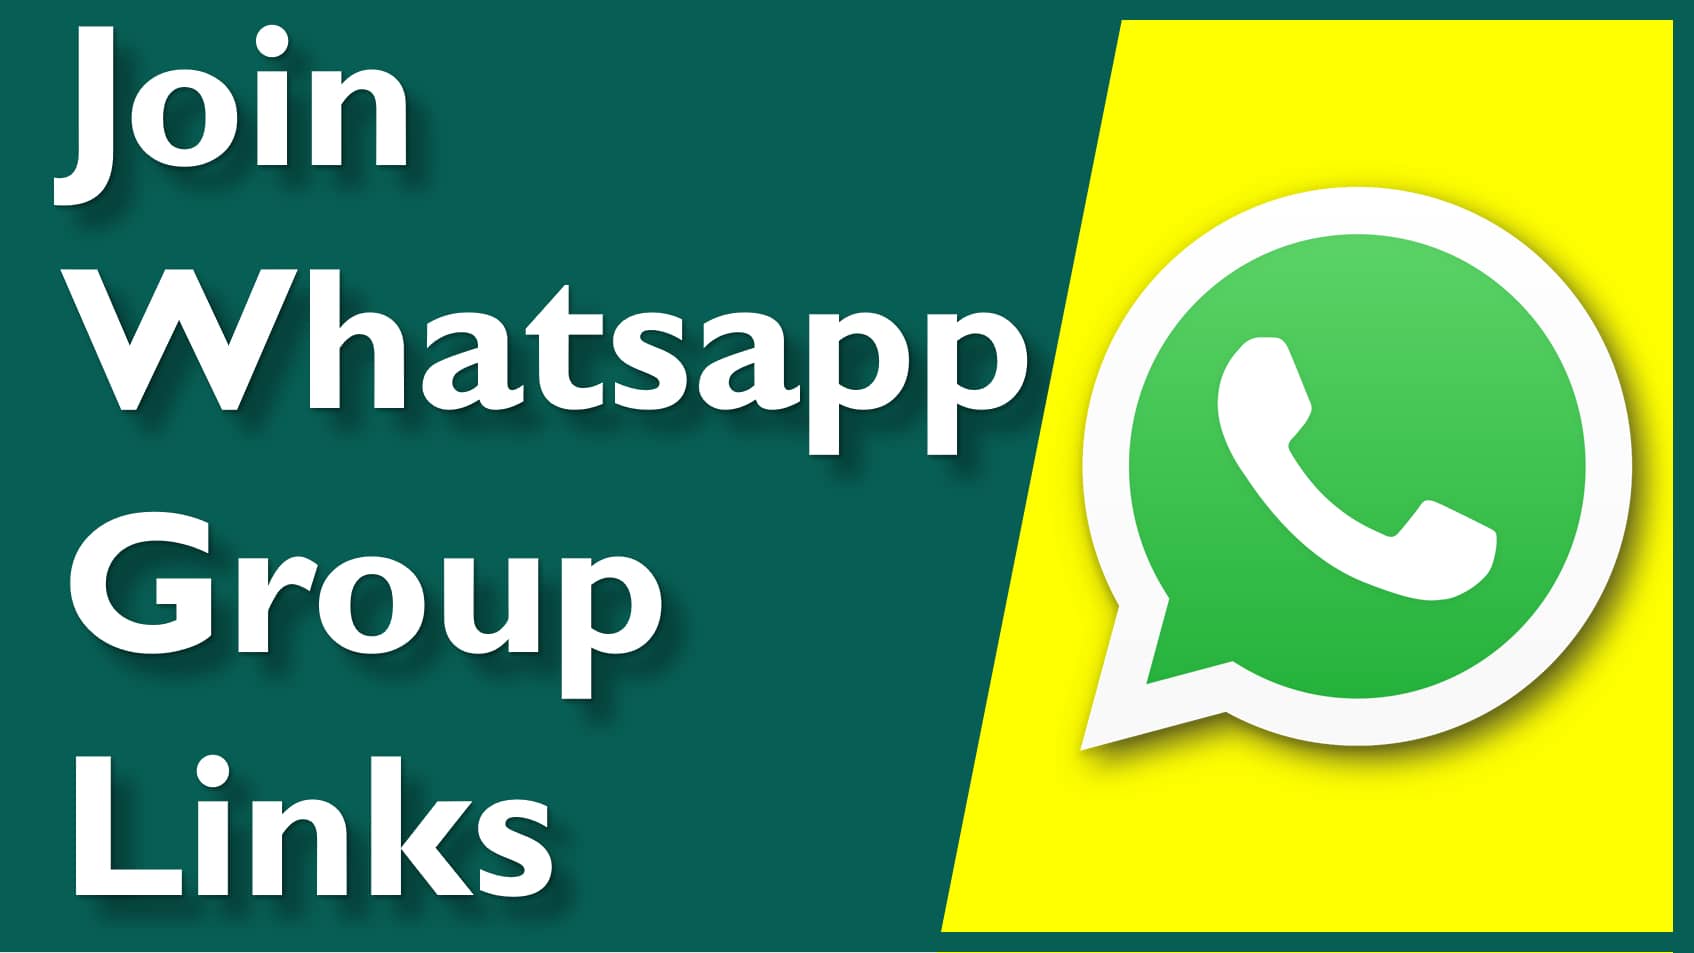 Call boy whatsapp group